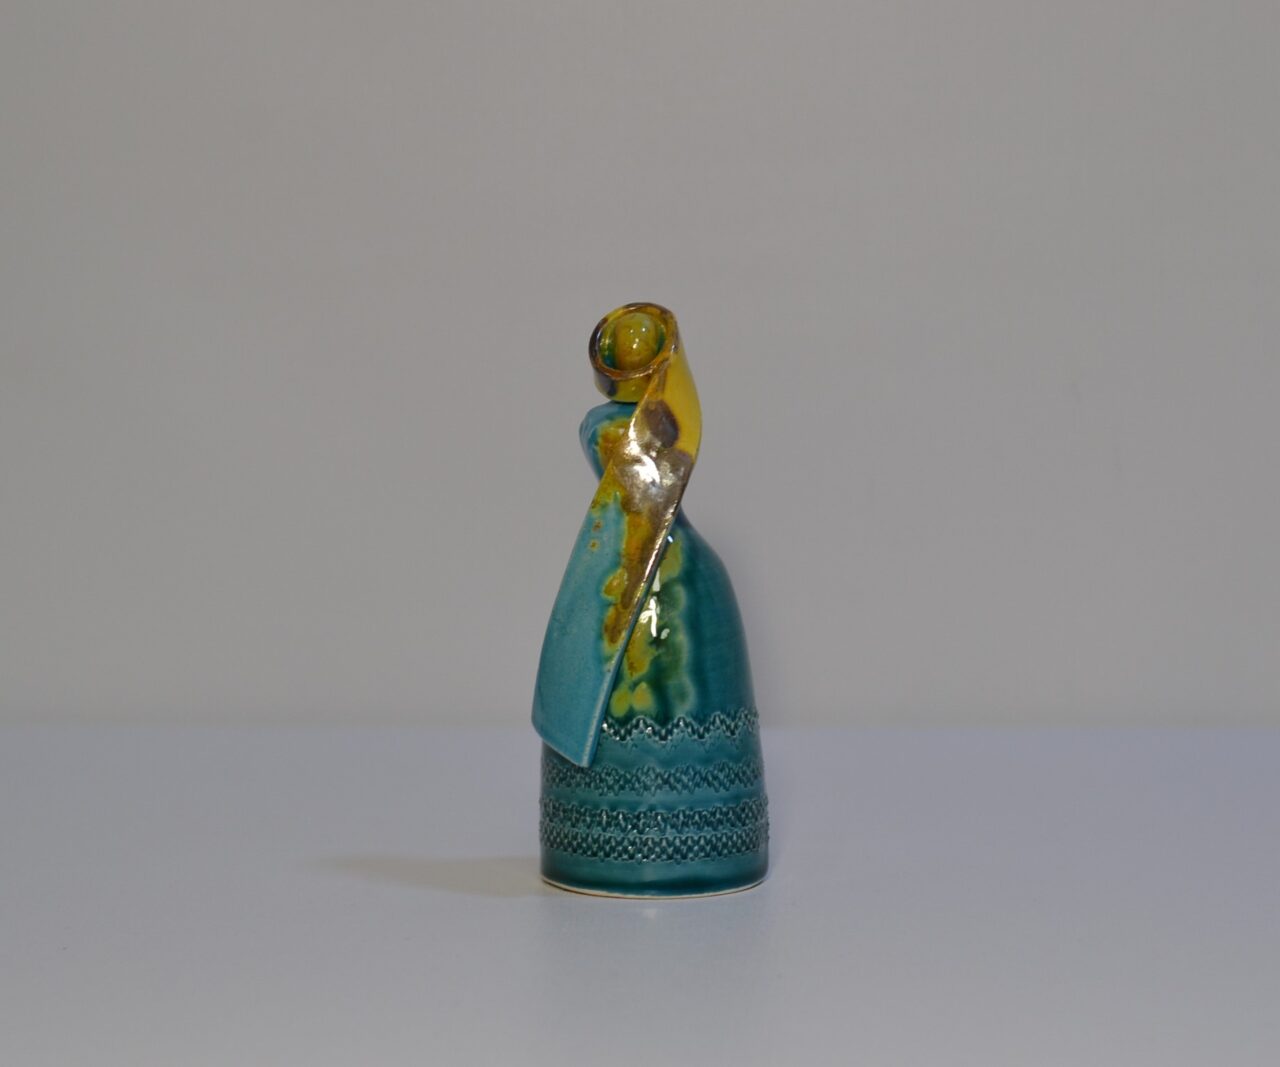 Donna sarda in ceramica “Tzia” rappresentante la Dea Madre – Ugo Serpi